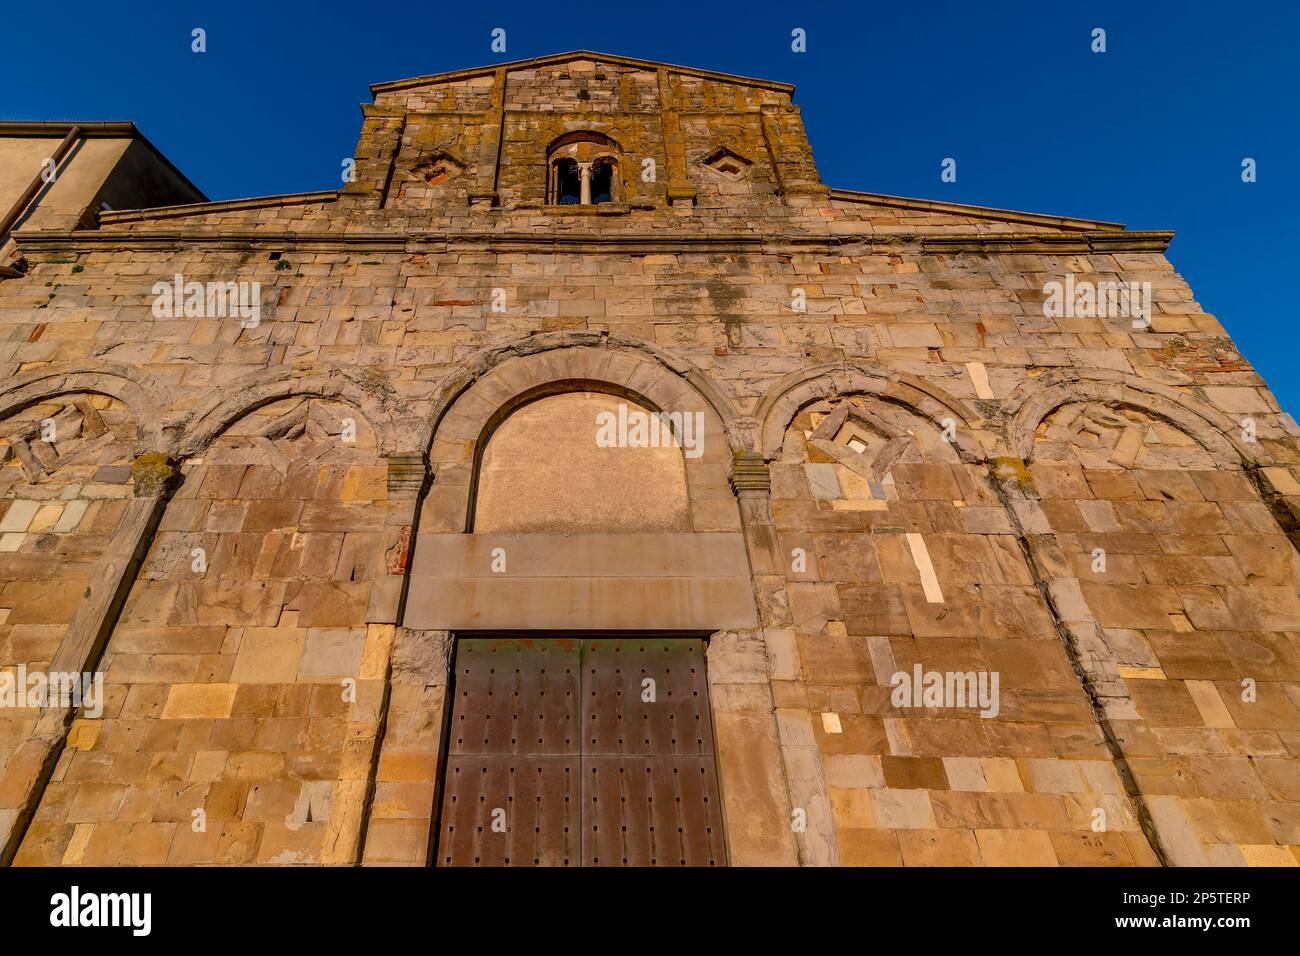 La facciata dell'antica Pieve di San Verano, centro storico di Peccioli, Pisa, Italia Foto Stock